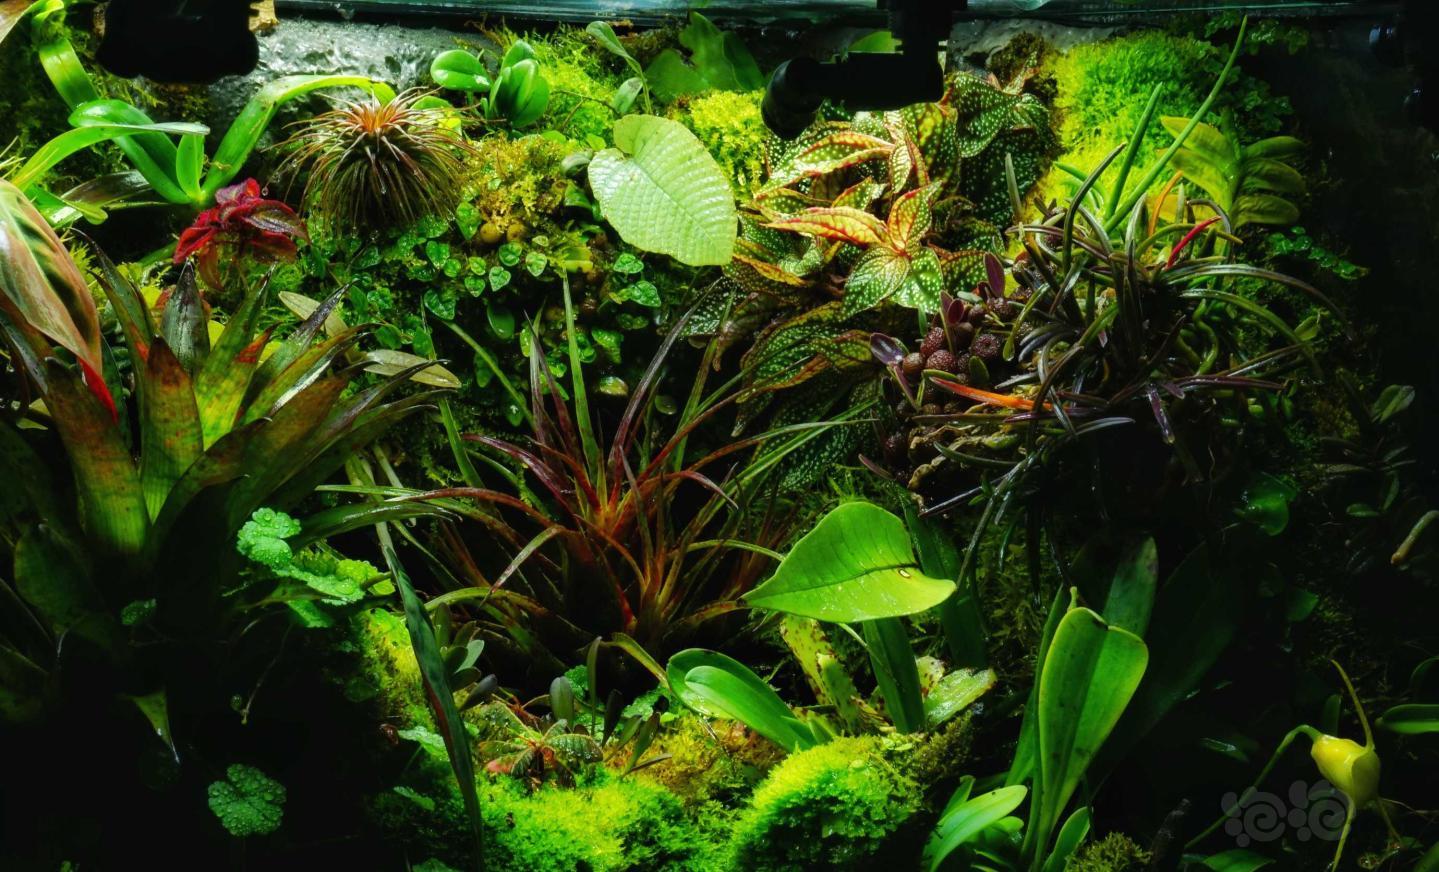 【雨林】更新一些我的雨林小缸内植物的照片-图7